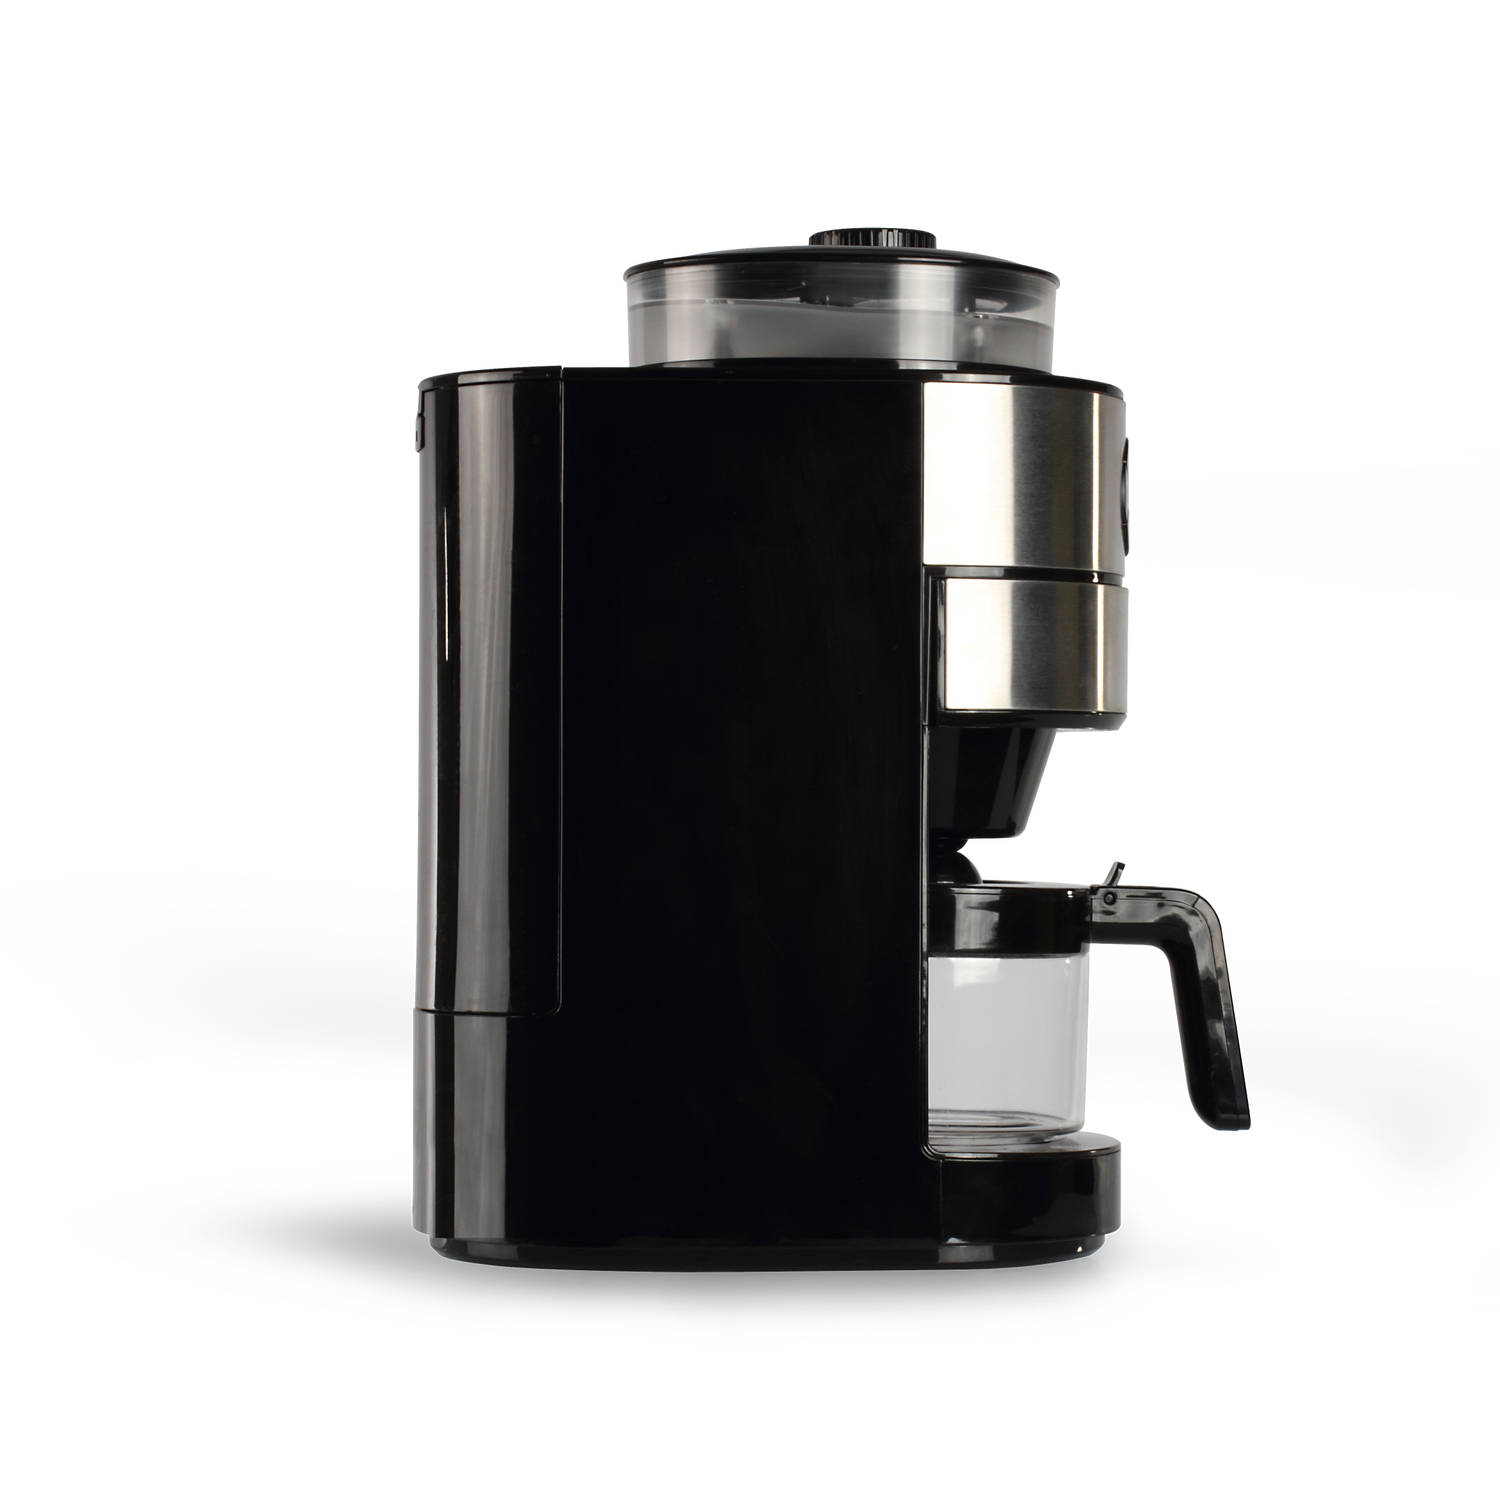 Opstand kopen draagbaar Livoo koffiezetapparaat met geïntegreerde koffiemolen | Blokker